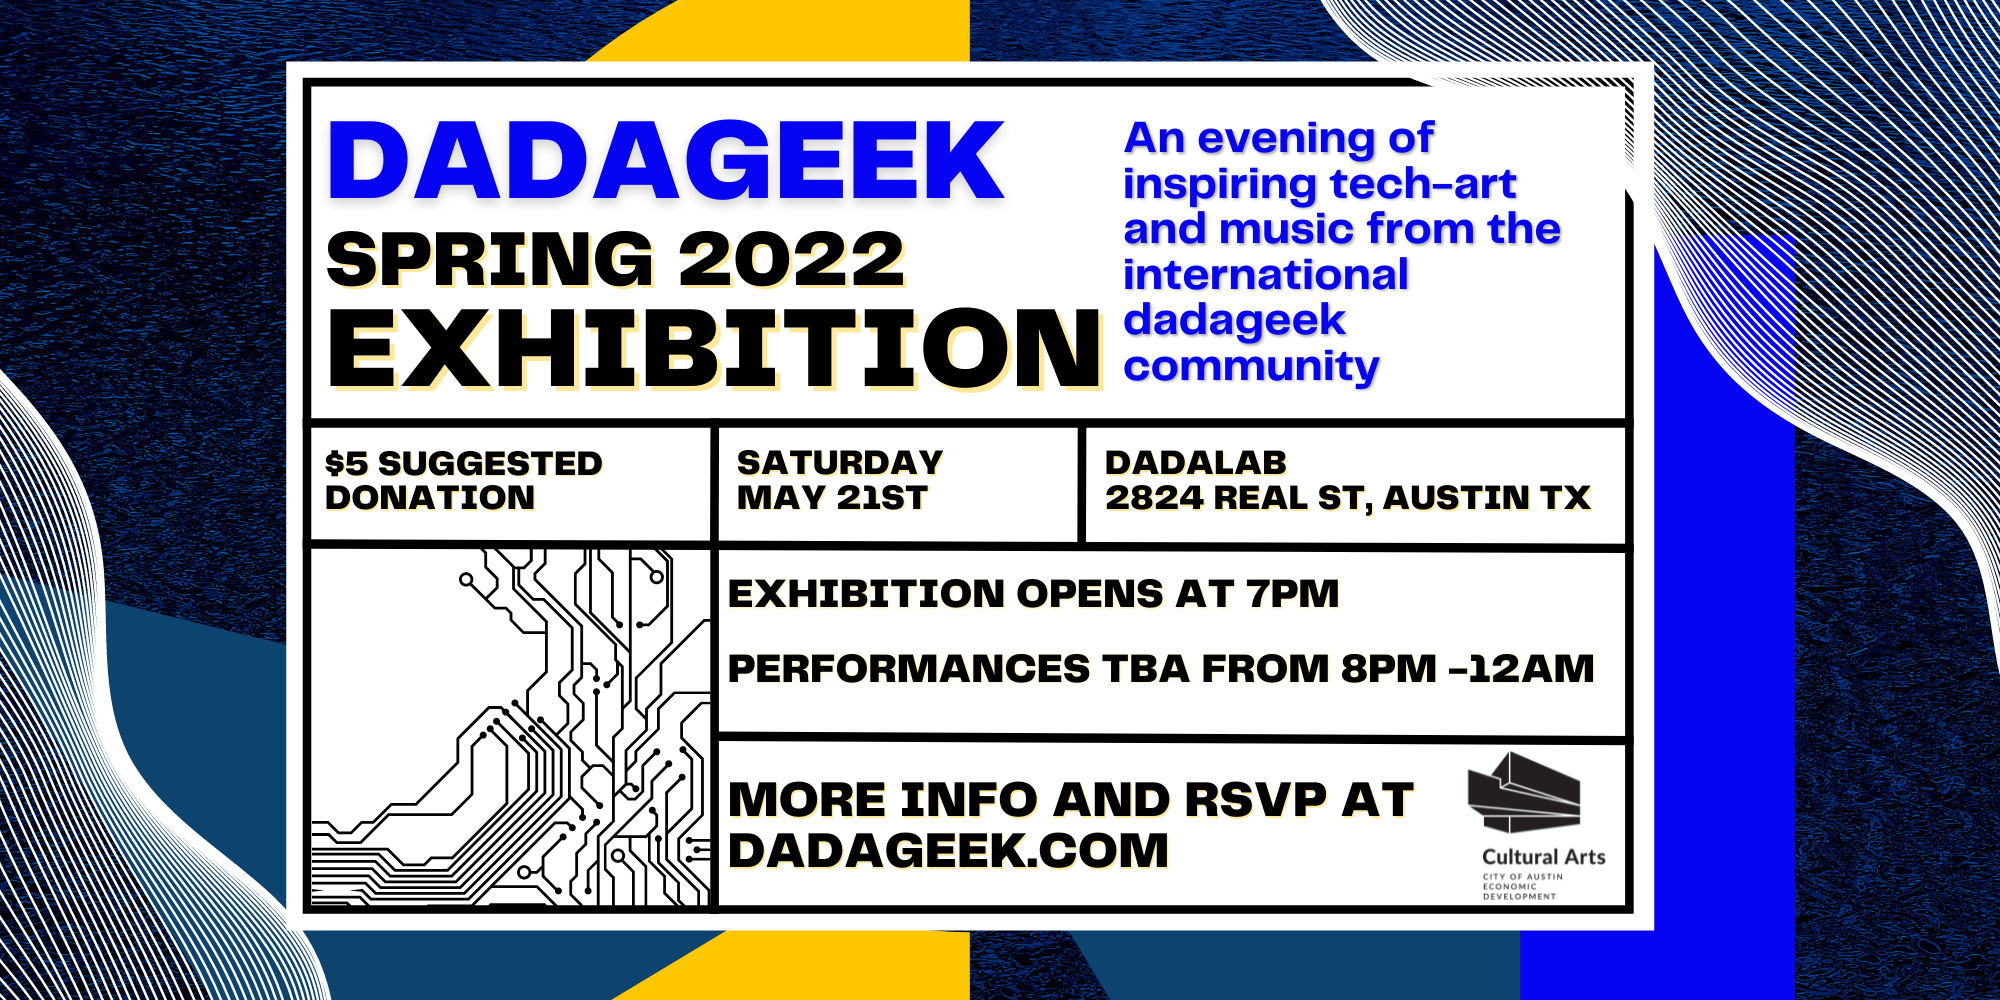 dadageek Spring 2022 Exhibition promotional image